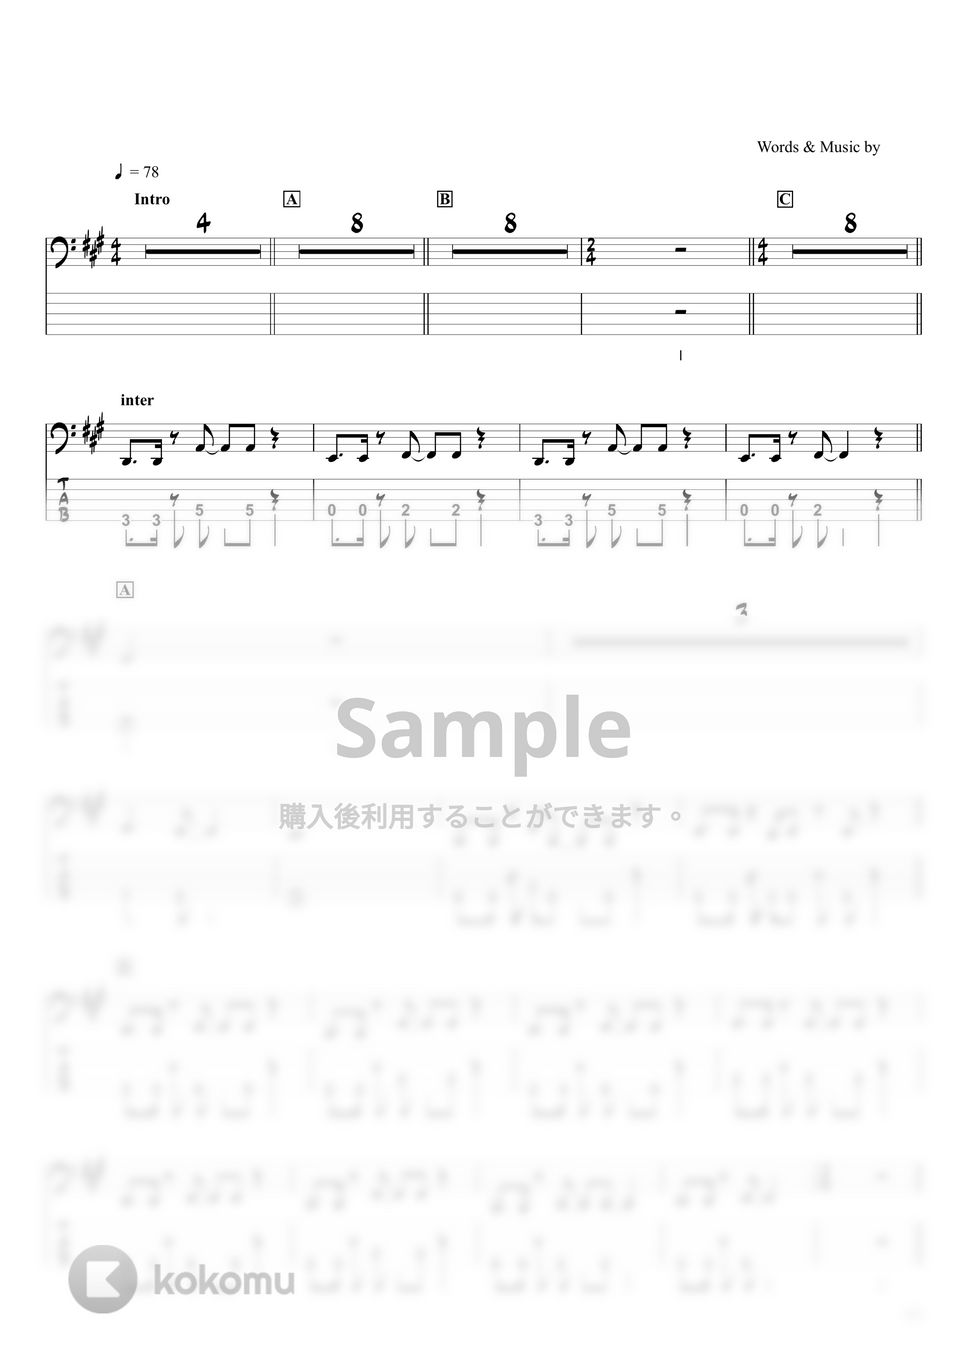 優里 - かくれんぼ (ベースTAB譜 / ☆5弦ベース対応) by swbass